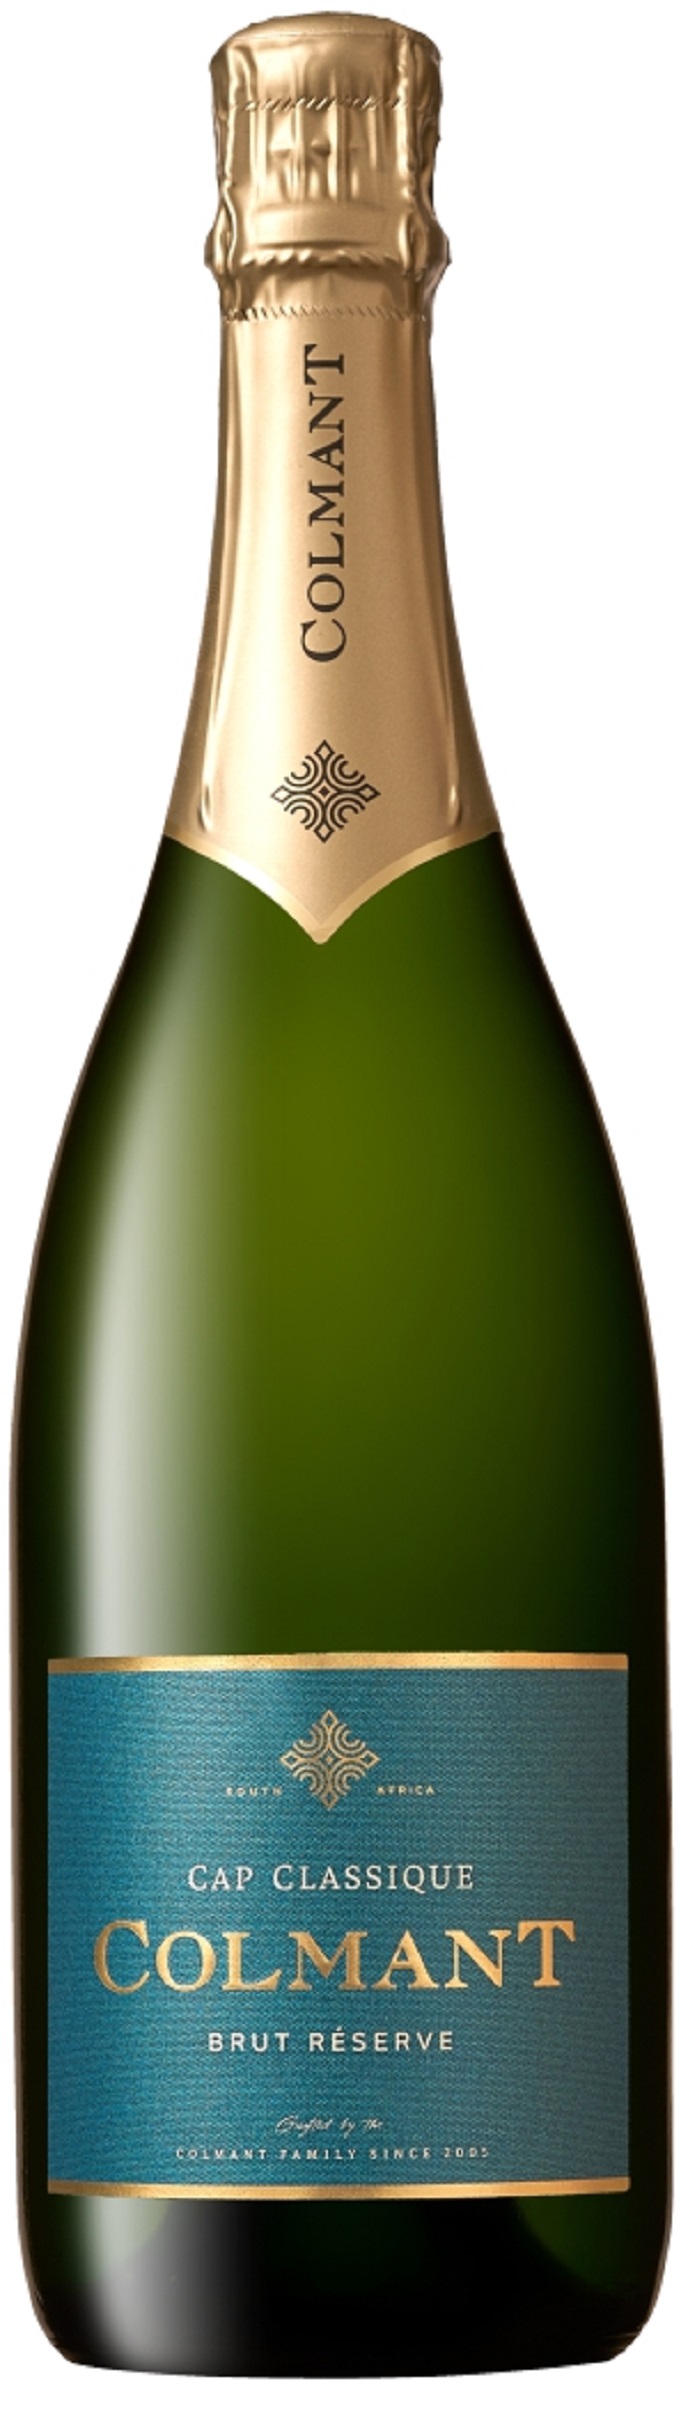 colmant cap classique, champagne vin effervescent d'Afrique du Sud